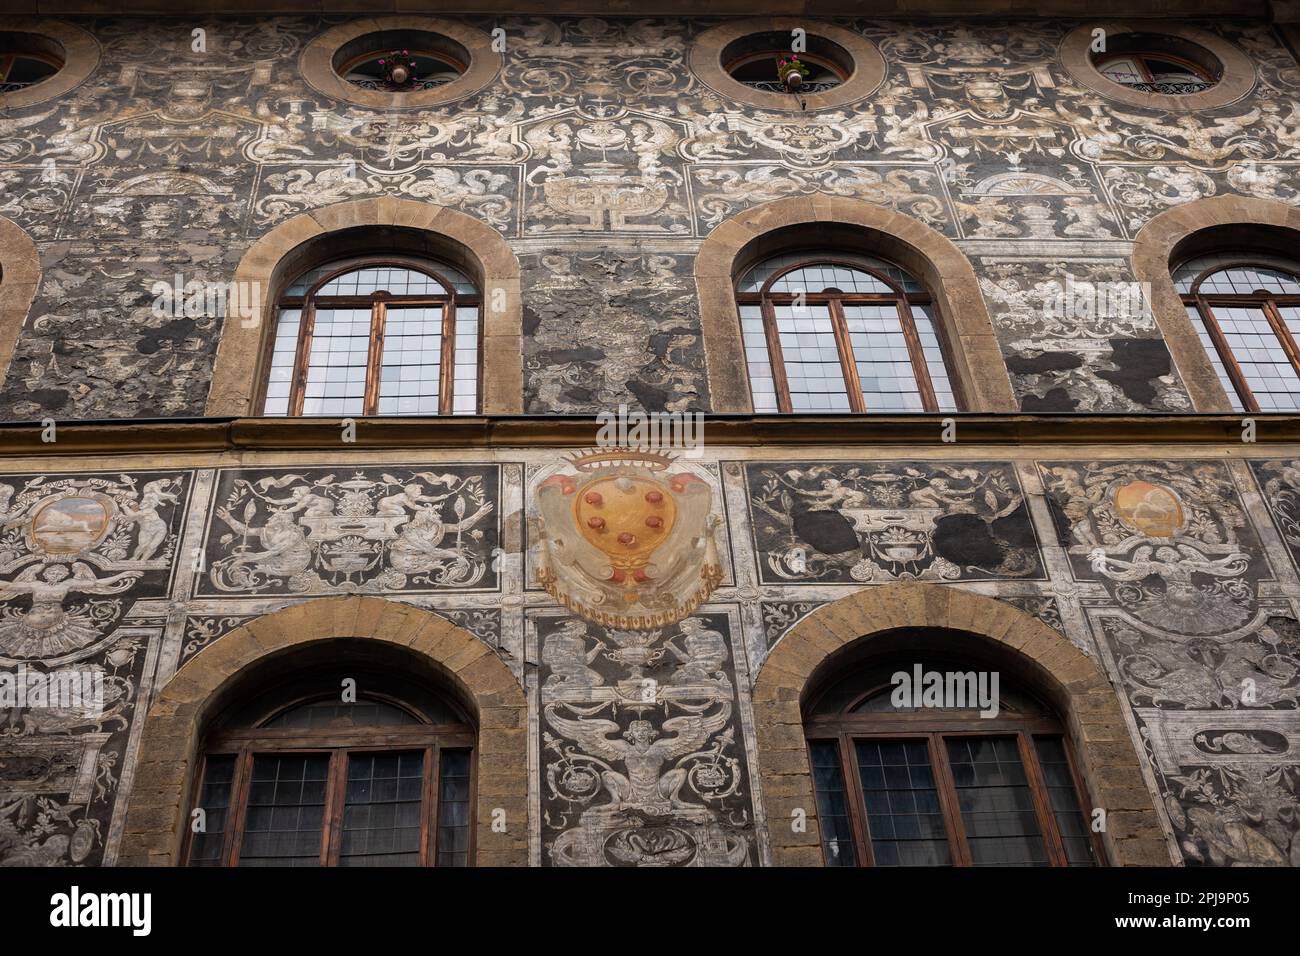 Palazzo di Bianca Cappello mit seiner einzigartigen Fassadendekoration. Florenz, Italien Stockfoto